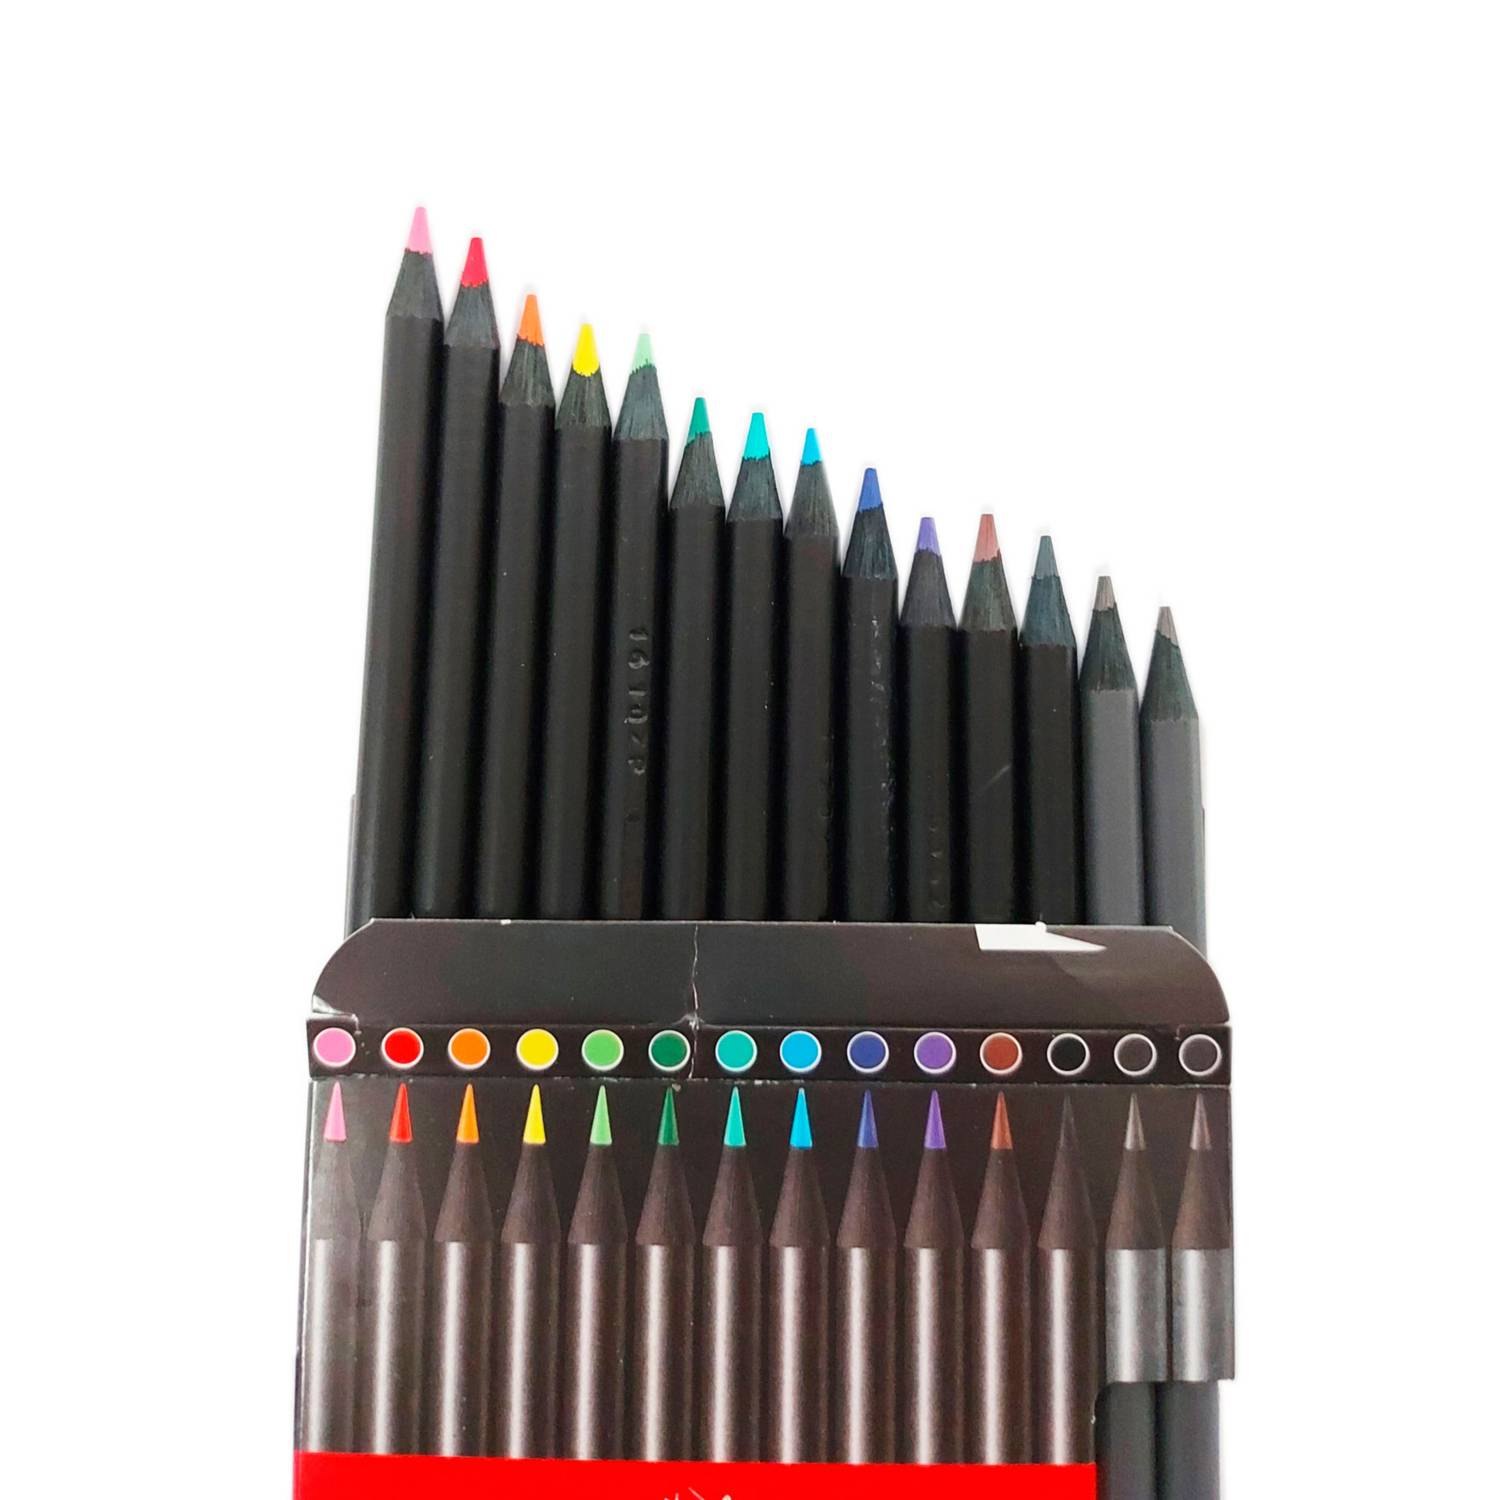 FABER-CASTELL Lapices de Colores Faber-Castell Supersoft x 12 + 2 lápices  de grafito